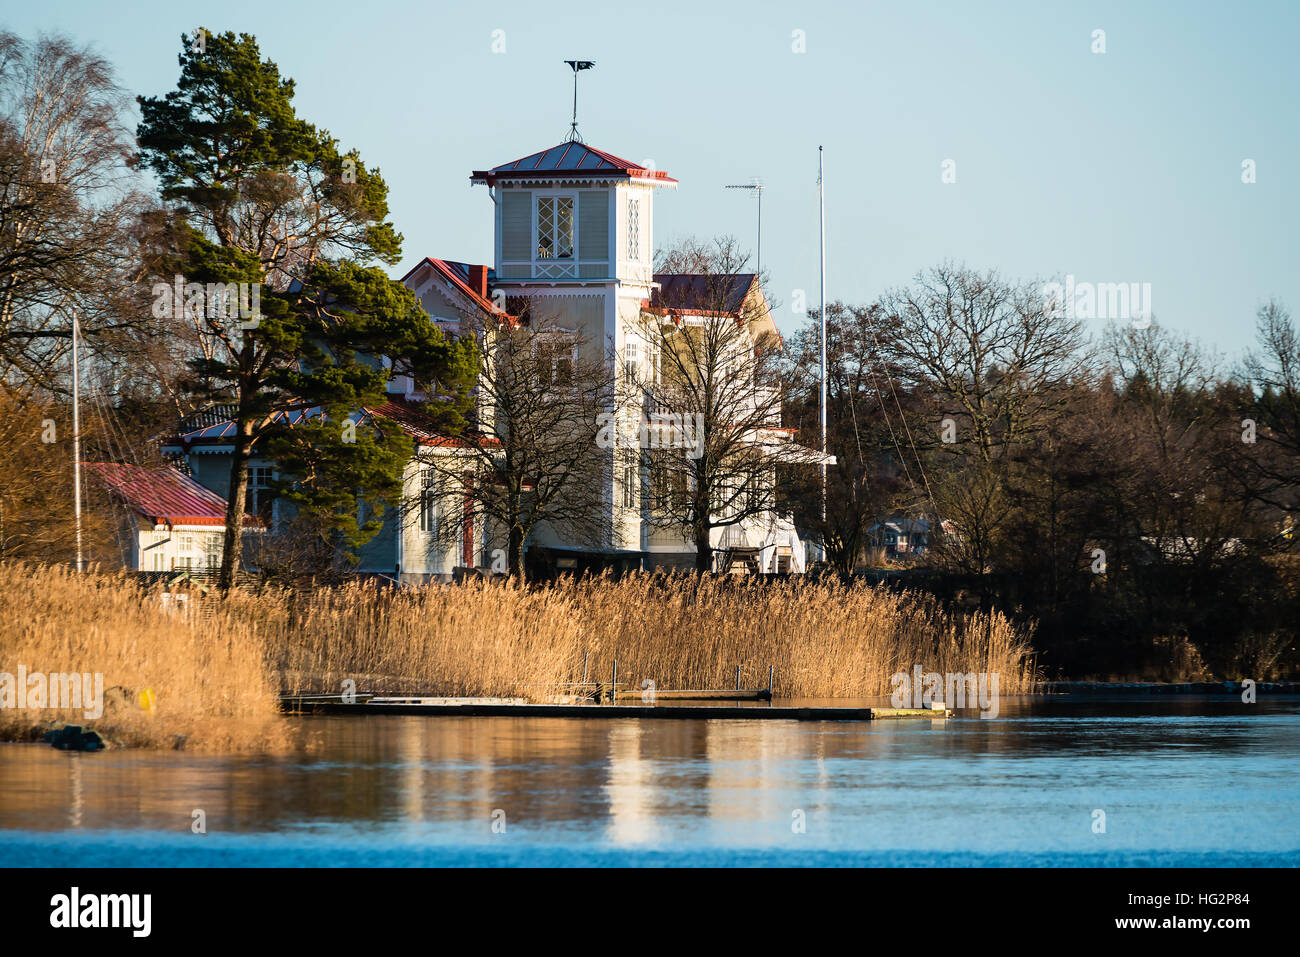 Ronneby, Suecia - 2 de enero de 2017: Documental de la vida costera. Preciosa casa con torre mirador junto al mar muy cerca del mar, visible en el foreg Foto de stock